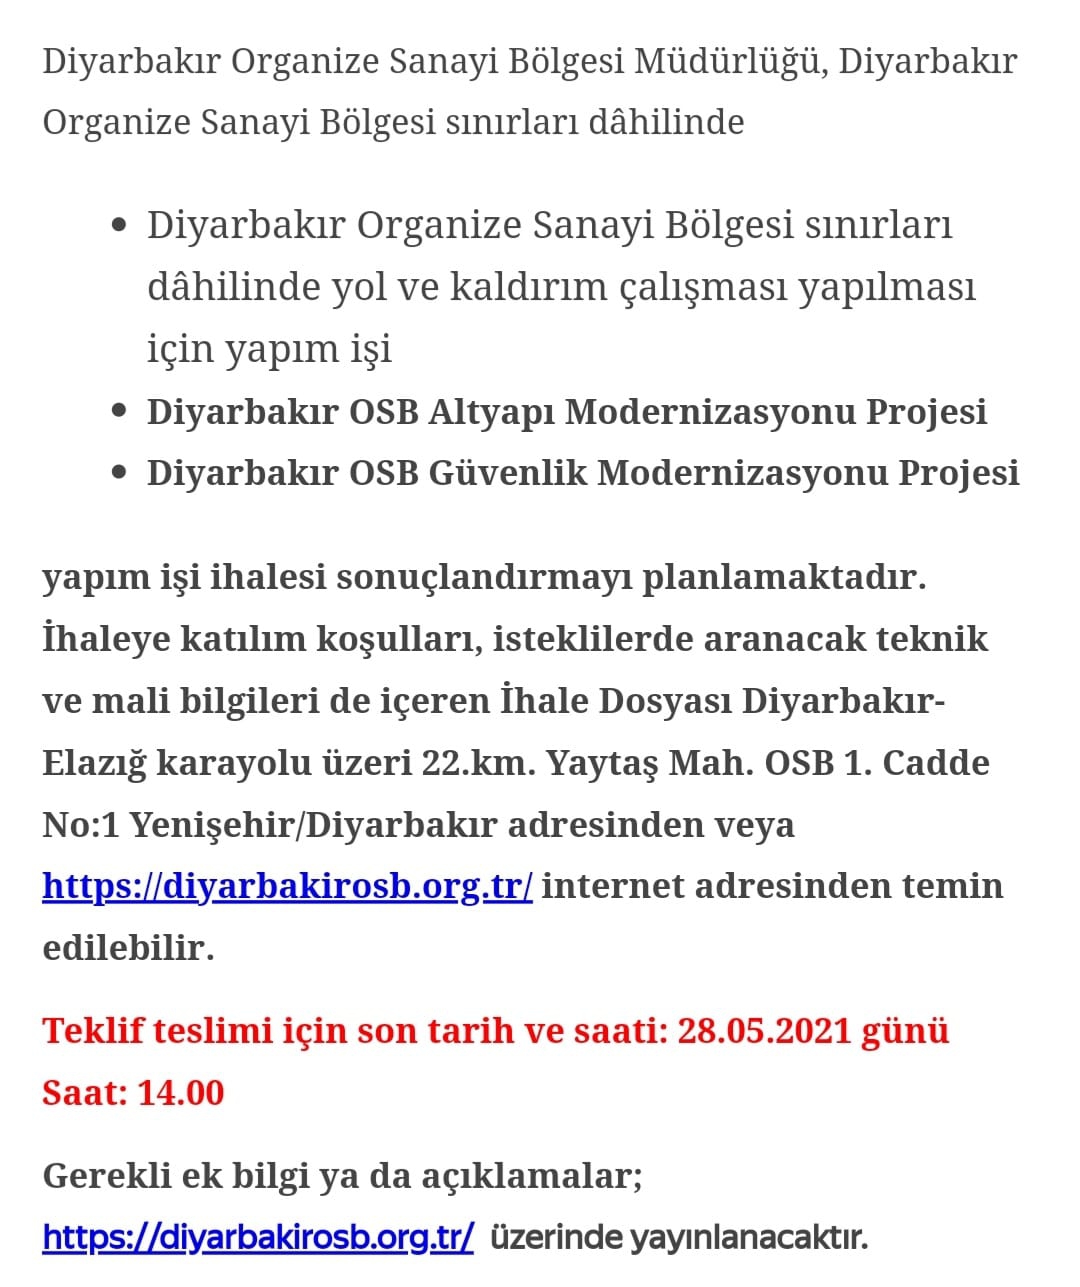 Diyarbakır Organize Sanayi Bölgesi Müdürlüğü, Diyarbakır Organize Sanayi Bölgesi sınırları dâhilinde yapım işi ihalesi sonuçlandırmayı planlamaktadır